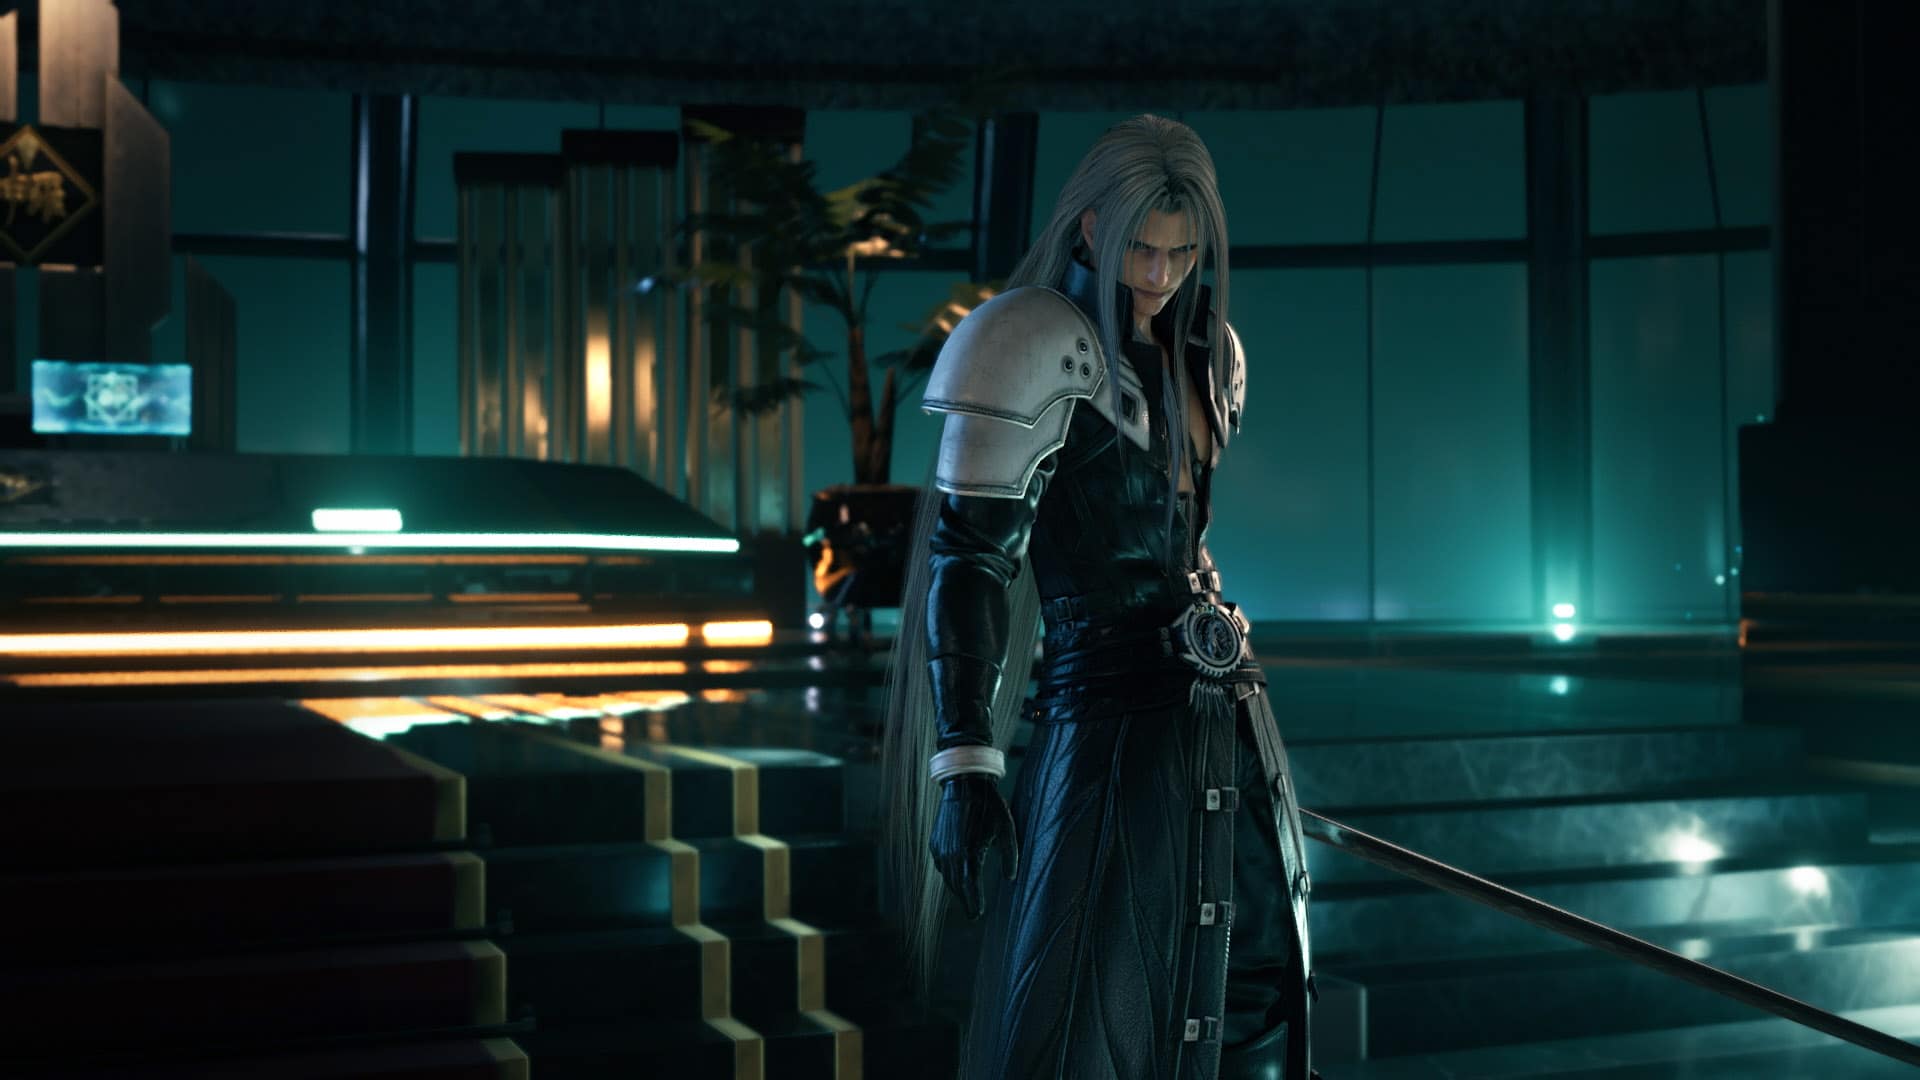 Final Fantasy 7 Remake revela geniales imágenes de personajes